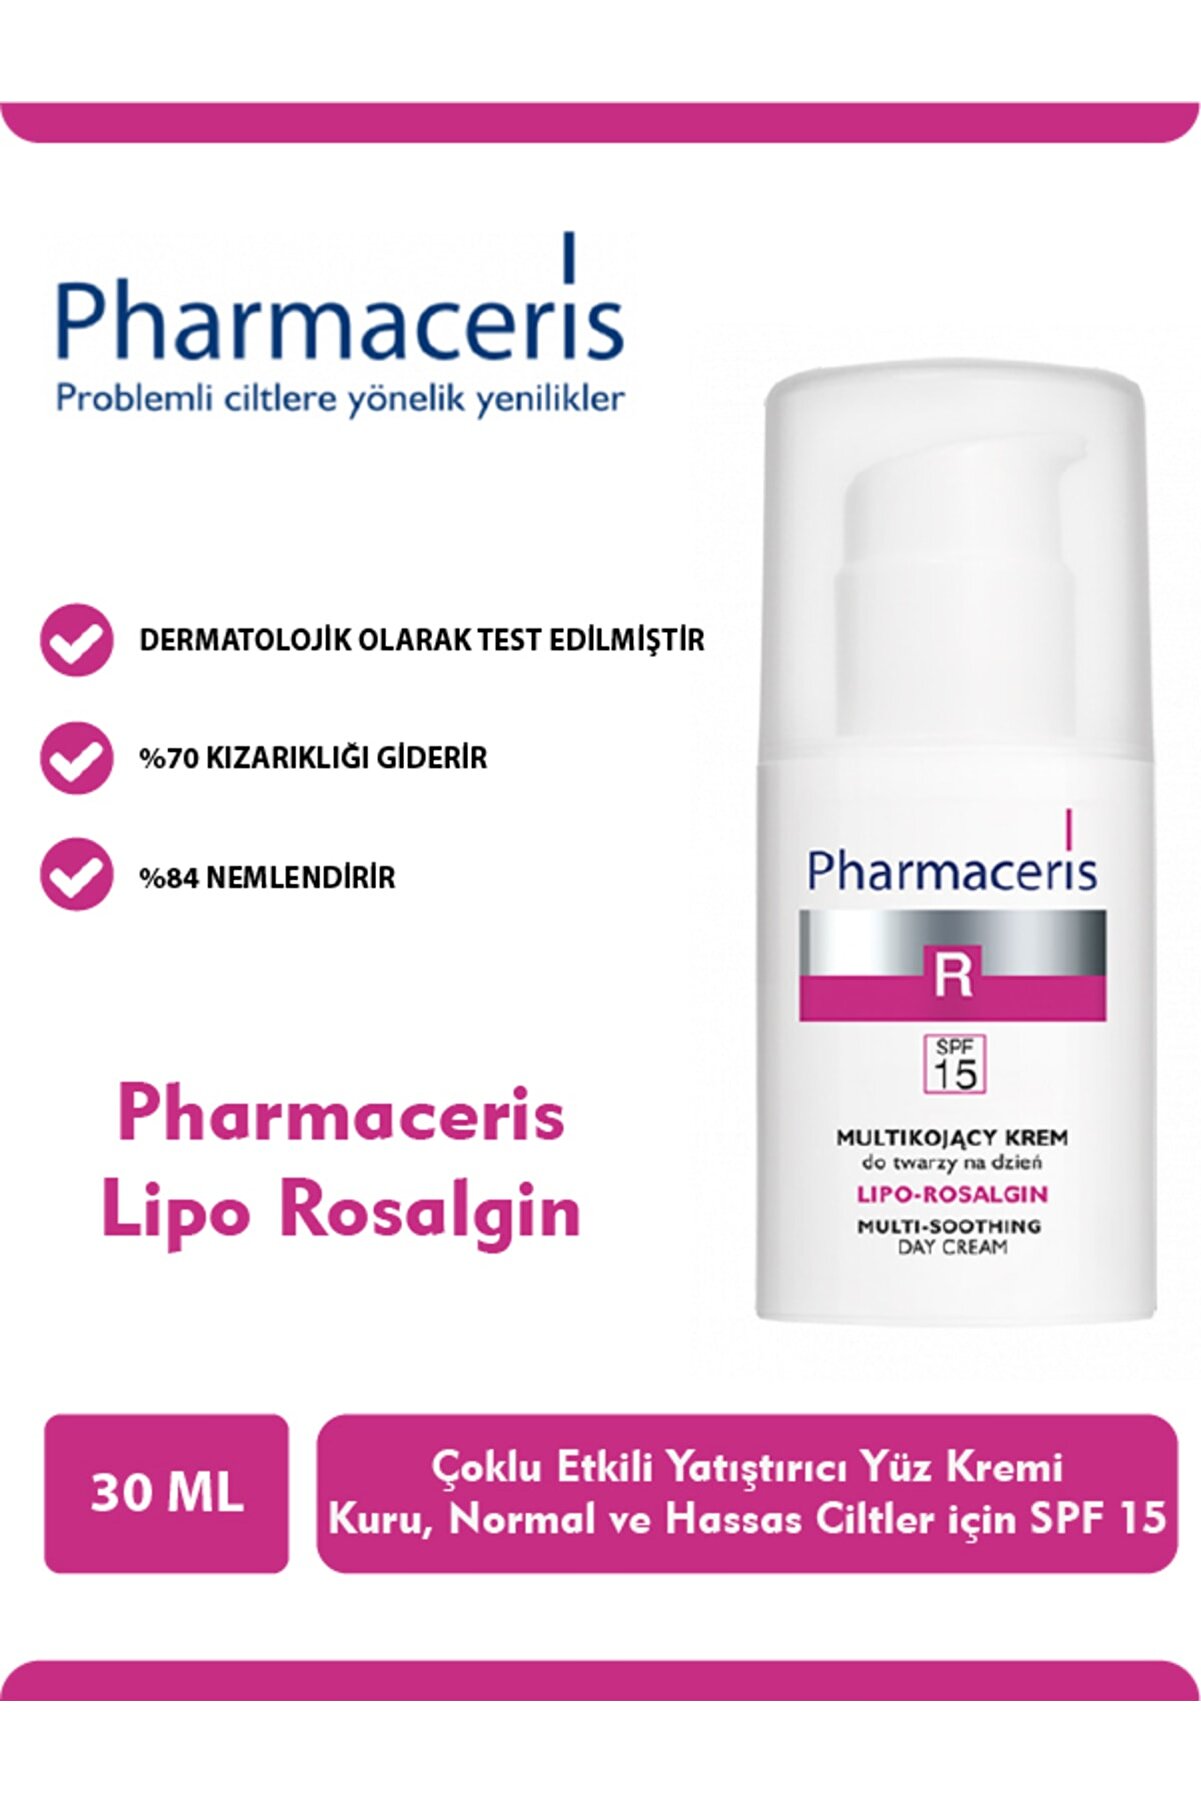 Pharmaceris Lipo Rosalgin Cream For Dry Skin 30 ml Kuru Ciltler Için Yatıştırıcı Krem